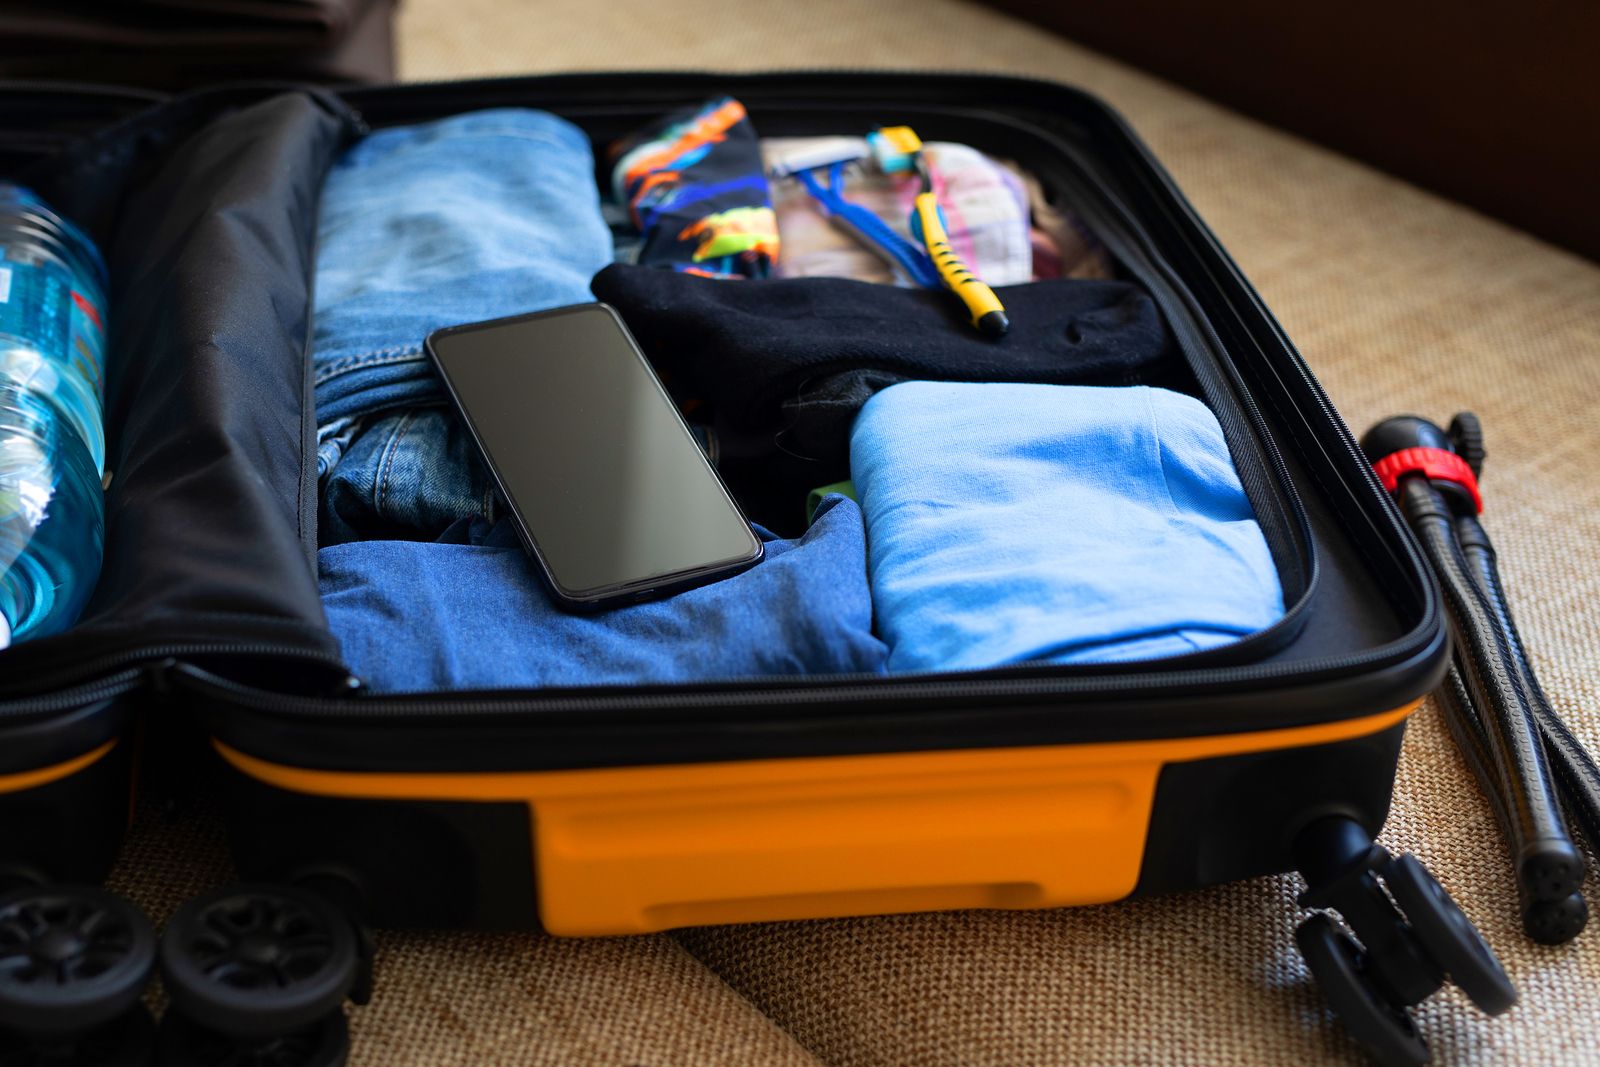 ¿Qué debes hacer si te han robado el contenido de tu maleta?